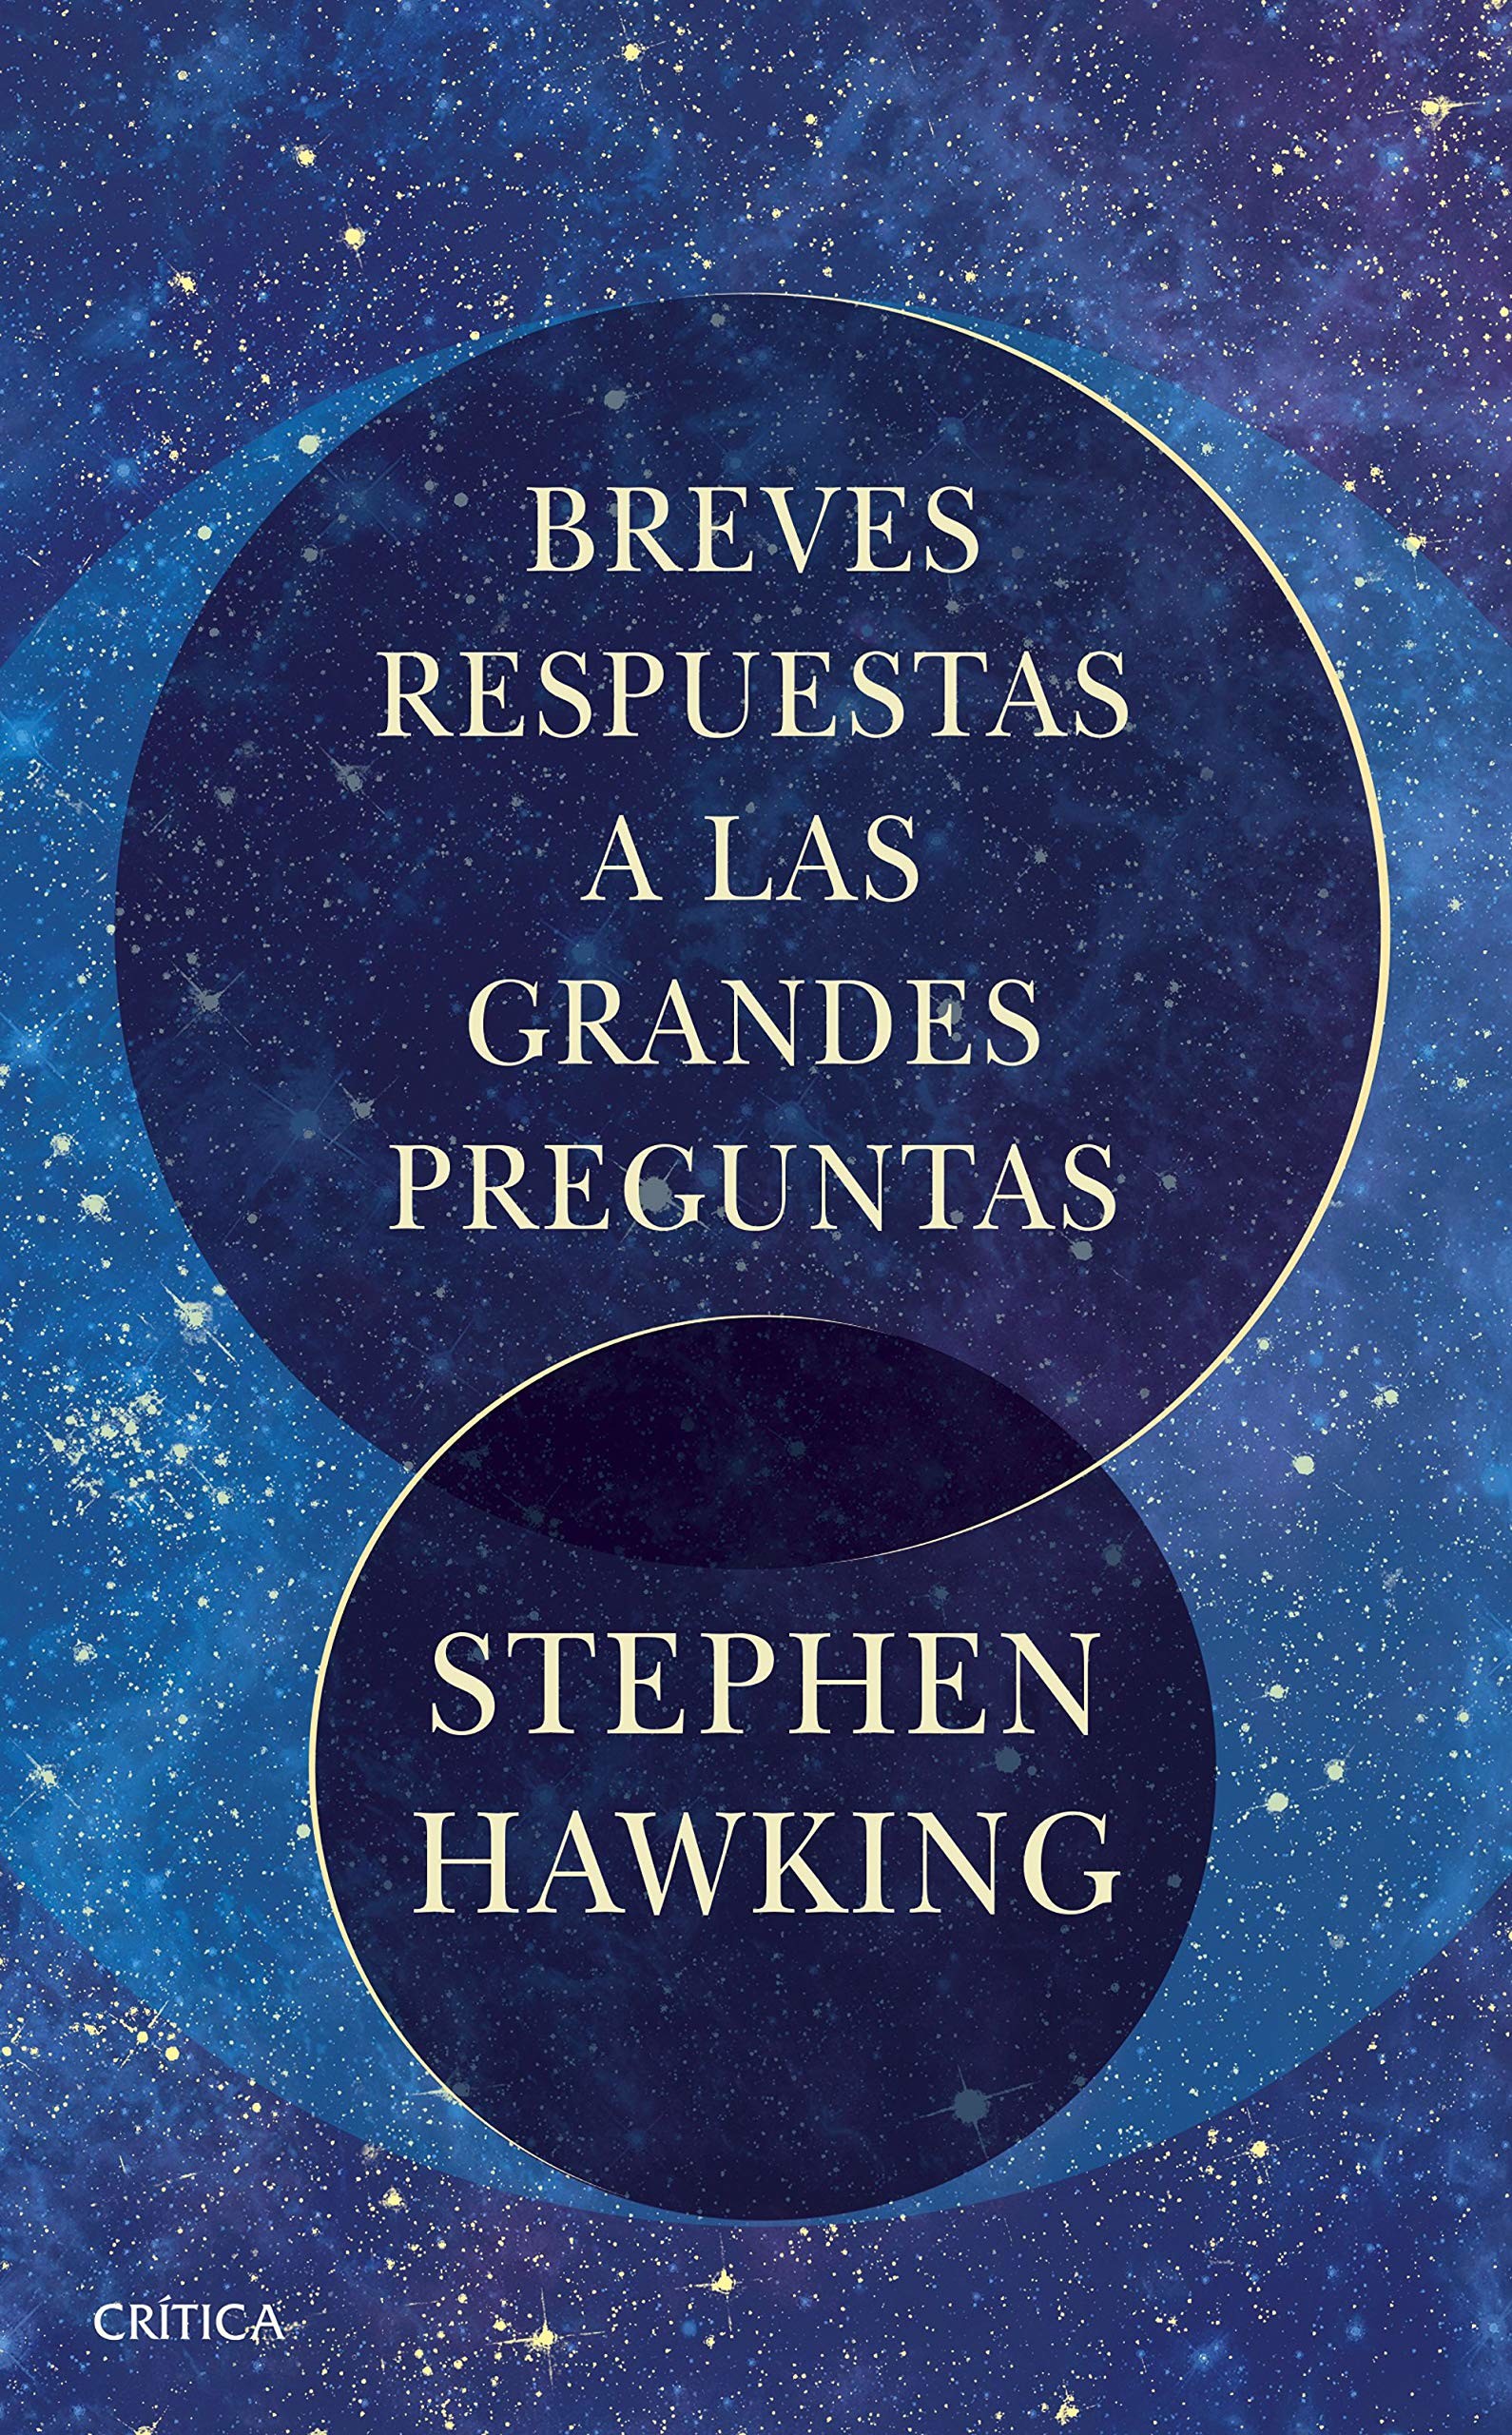 la última obra de Hawking en el día internacional del libro